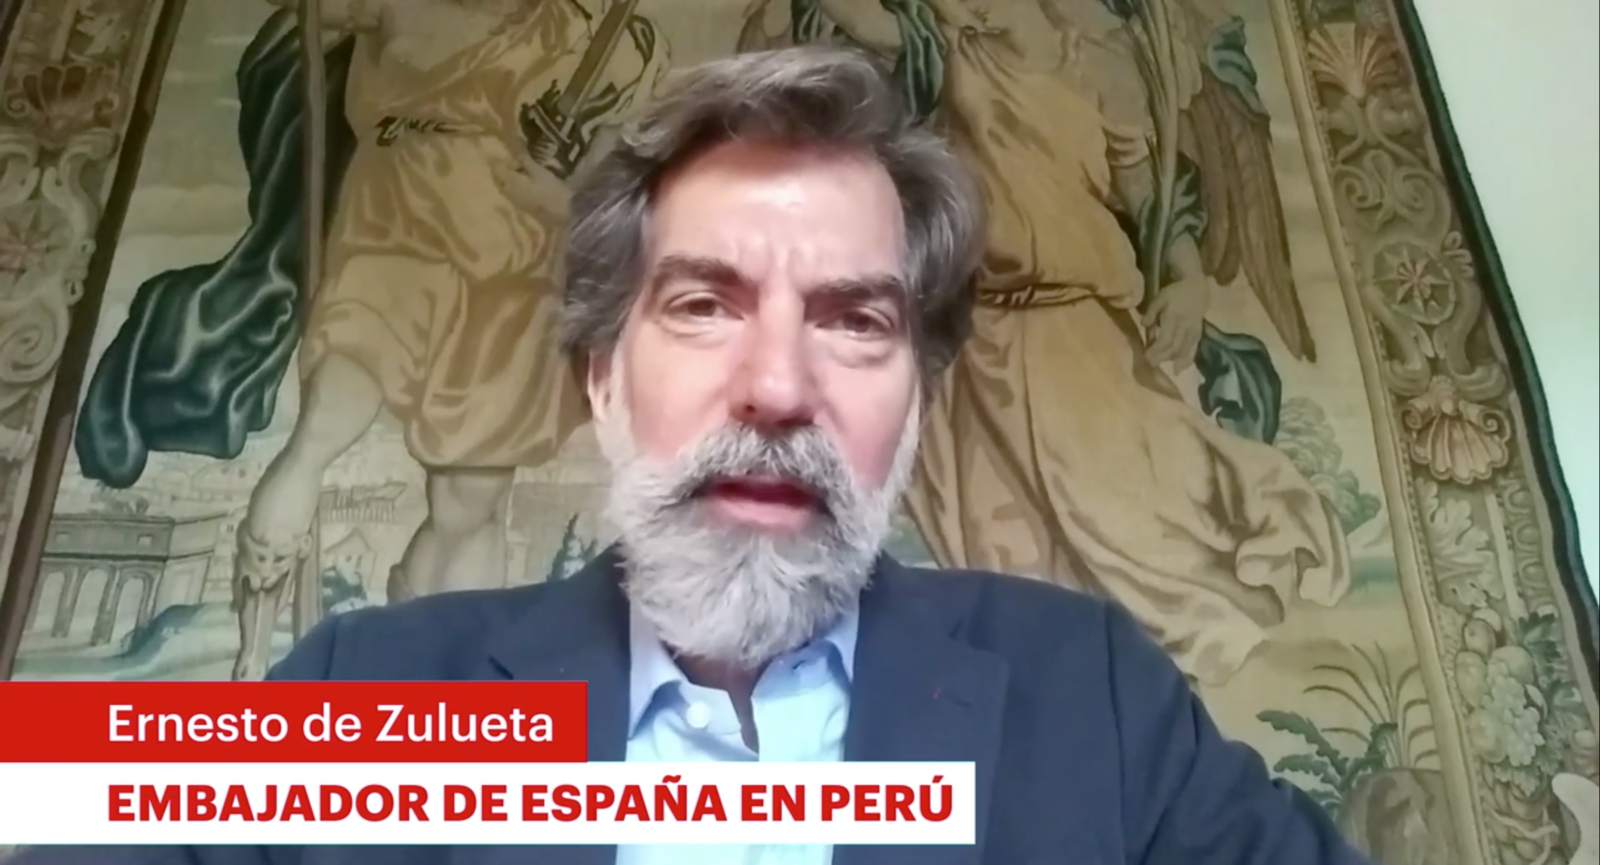 Videomensaje del Embajador de España en Perú